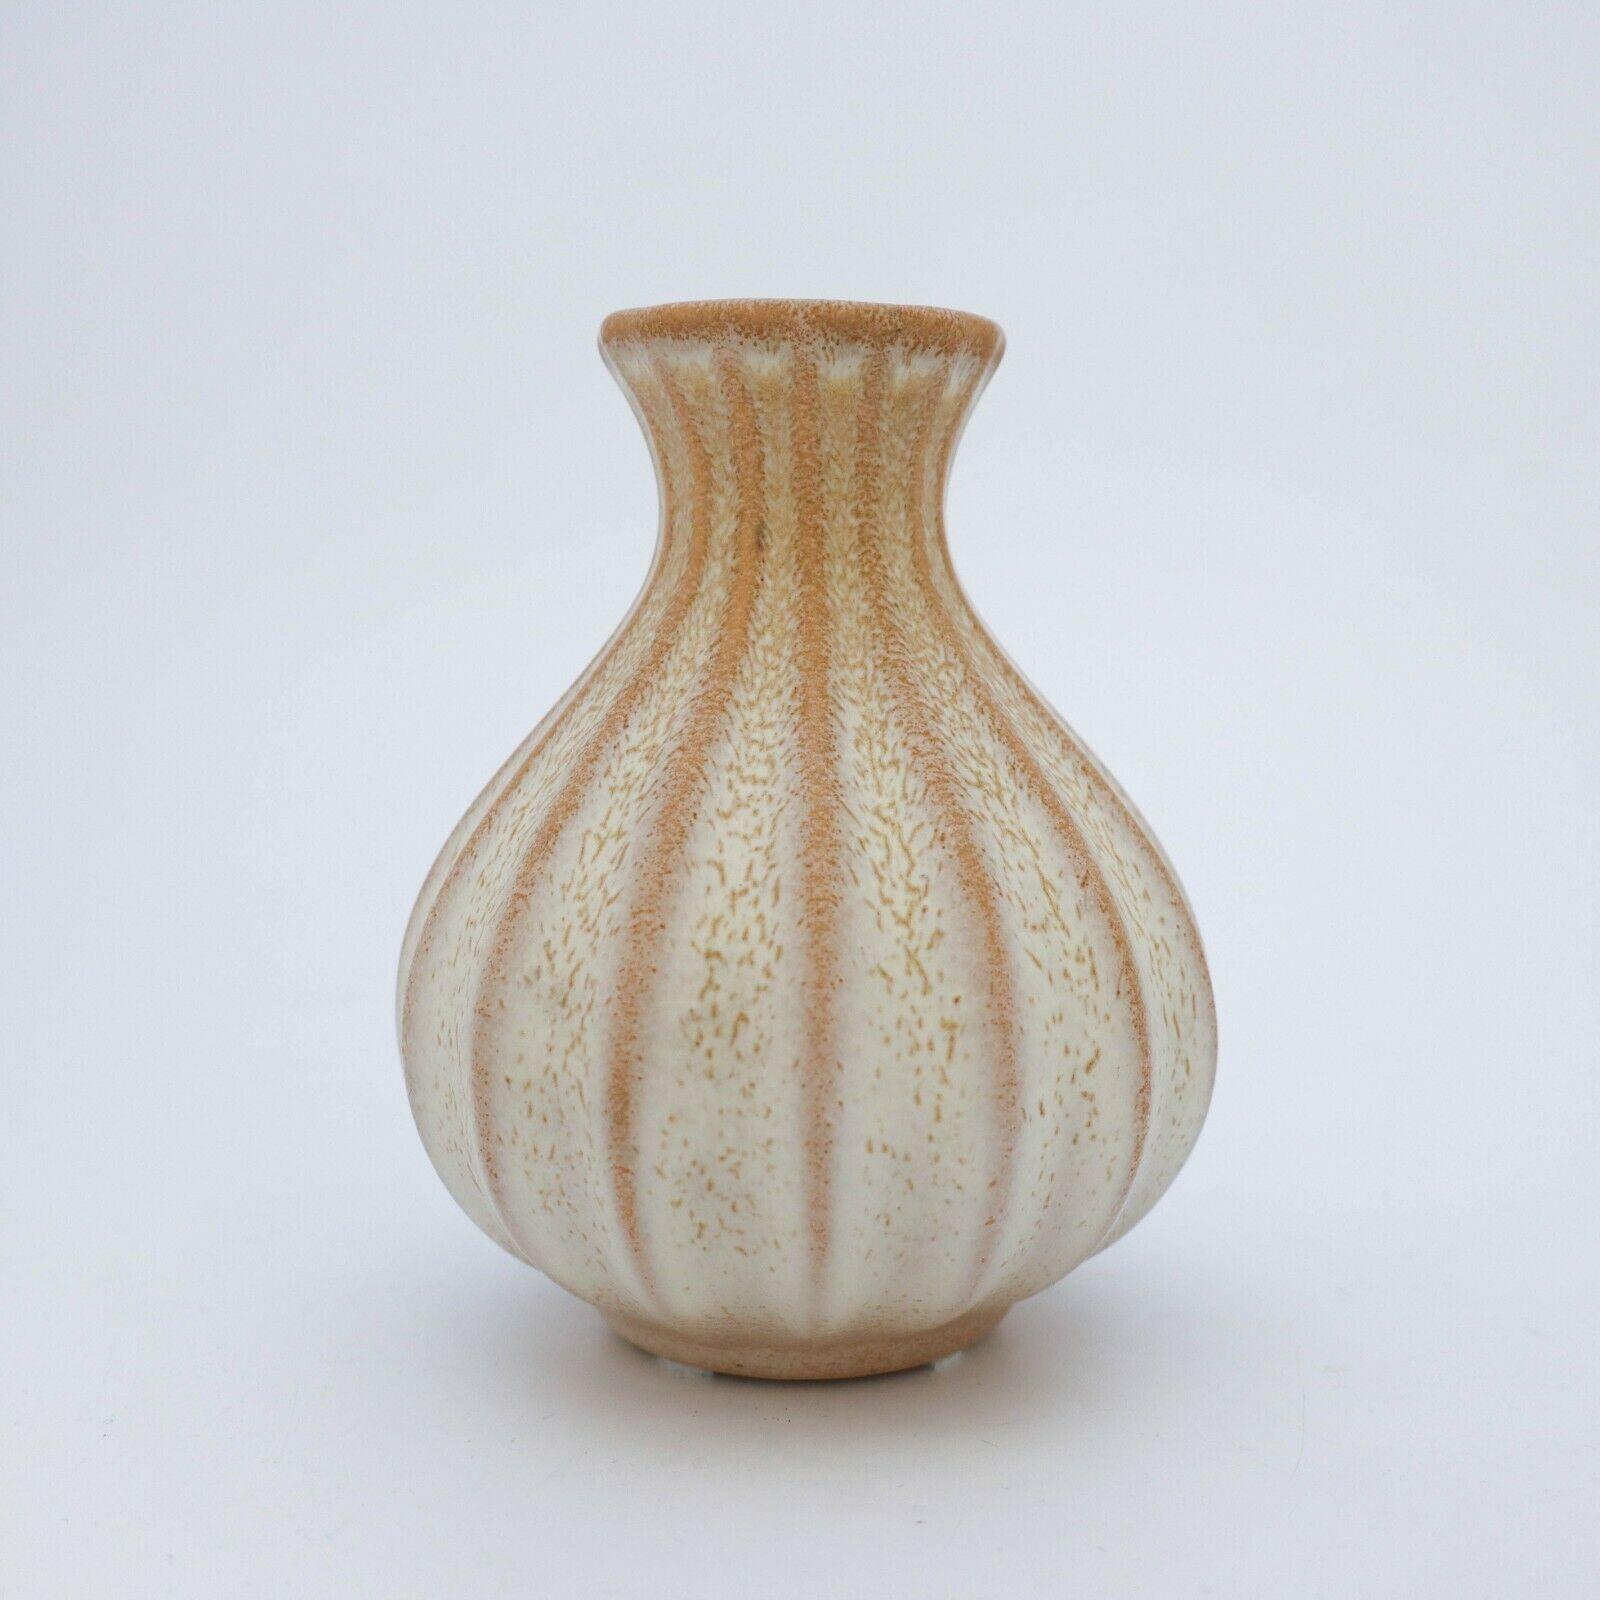 Eine schöne beigefarbene Vase, entworfen von Ewald Dahlskog bei Bo Fajans in Gefle in den 1930er Jahren. Die Vase ist 15,5 cm hoch und befindet sich in sehr gutem Zustand.